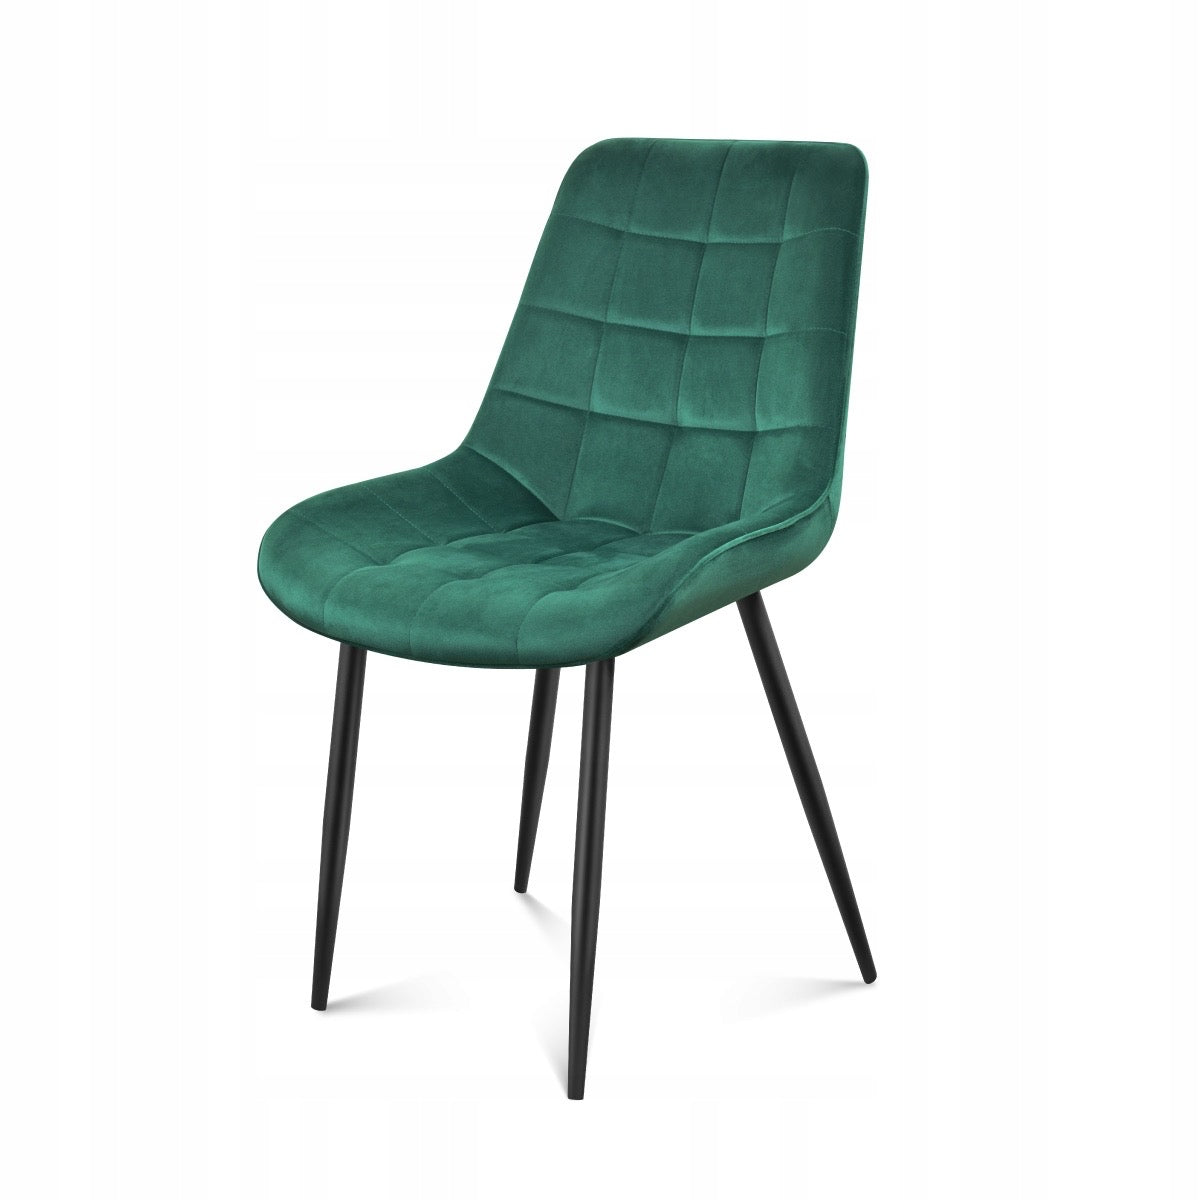 Padded chair, in green velvet